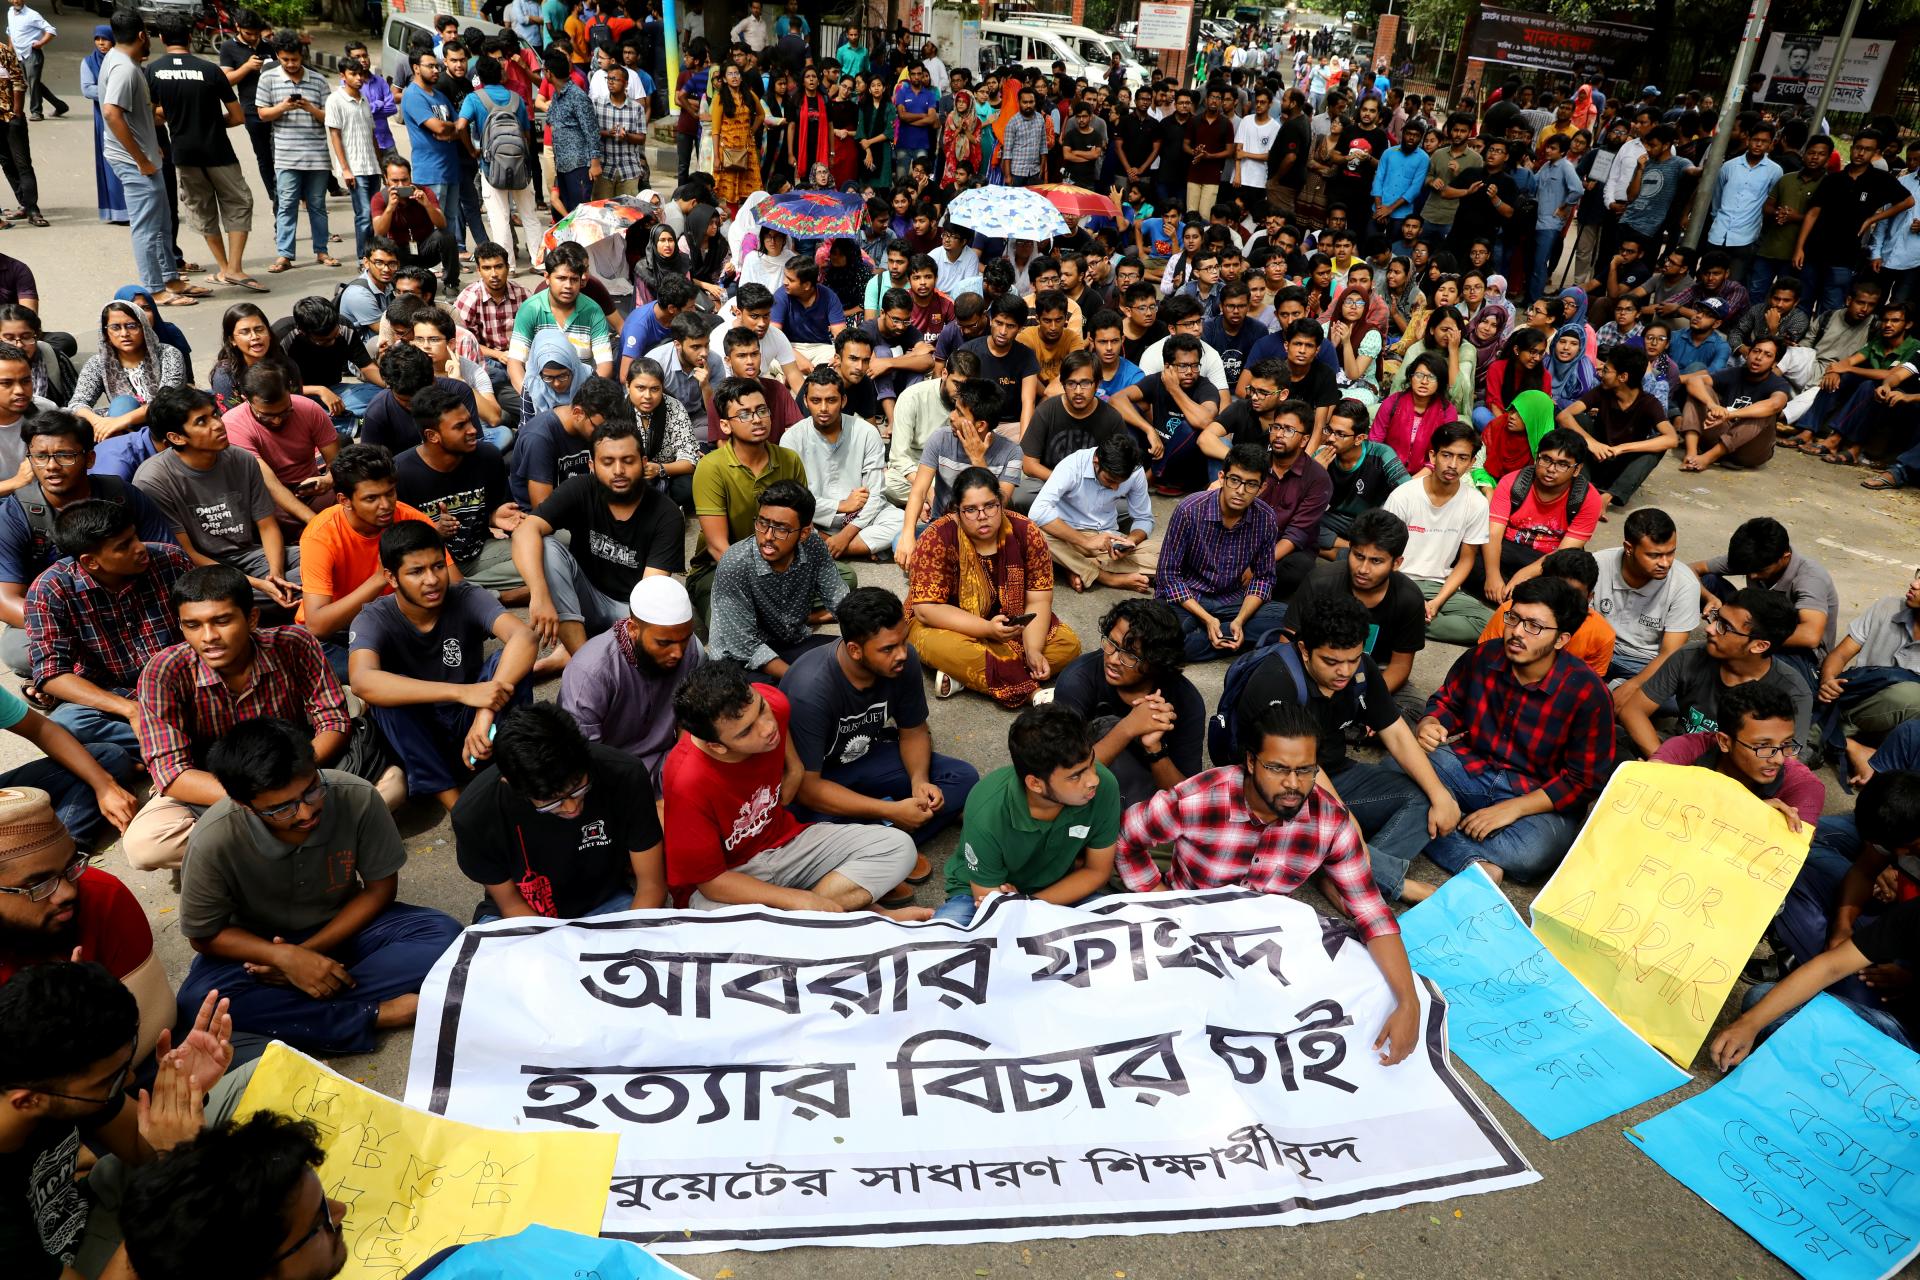 bangladishta 20 ademge ölüm jazasi bérildi